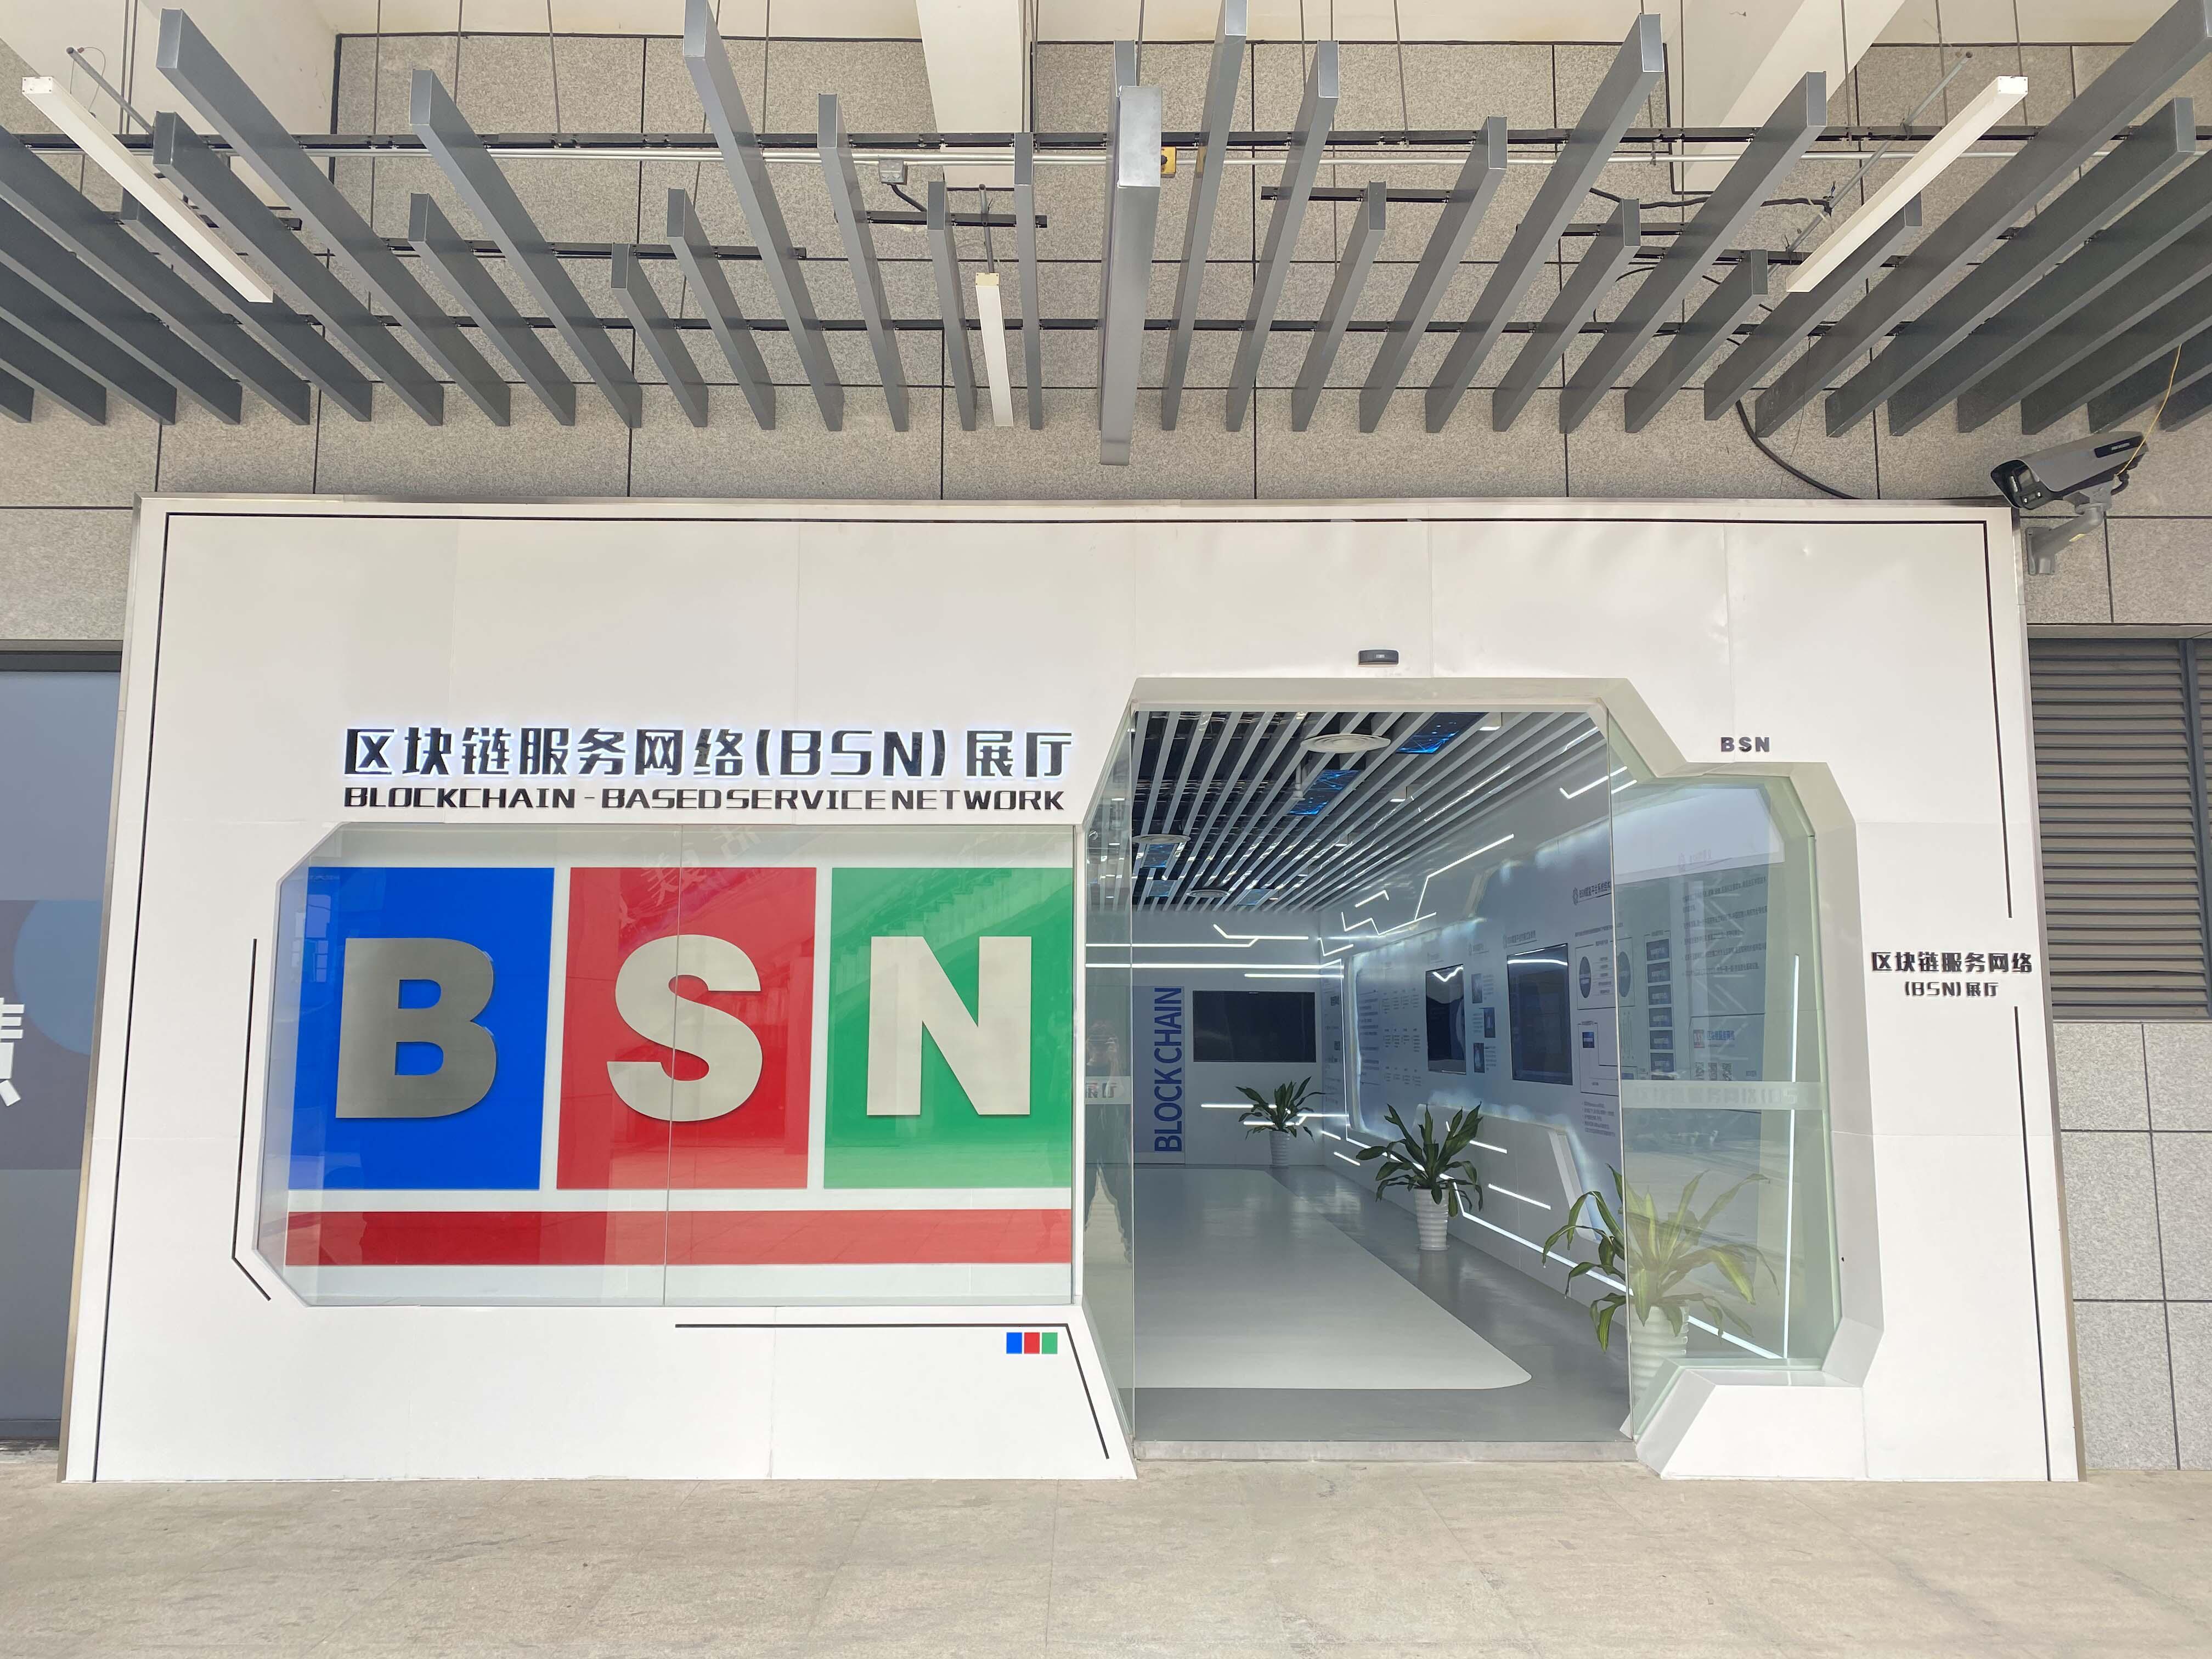 首个区块链服务网络BSN官方展厅在杭州市下城区建成并开放参观